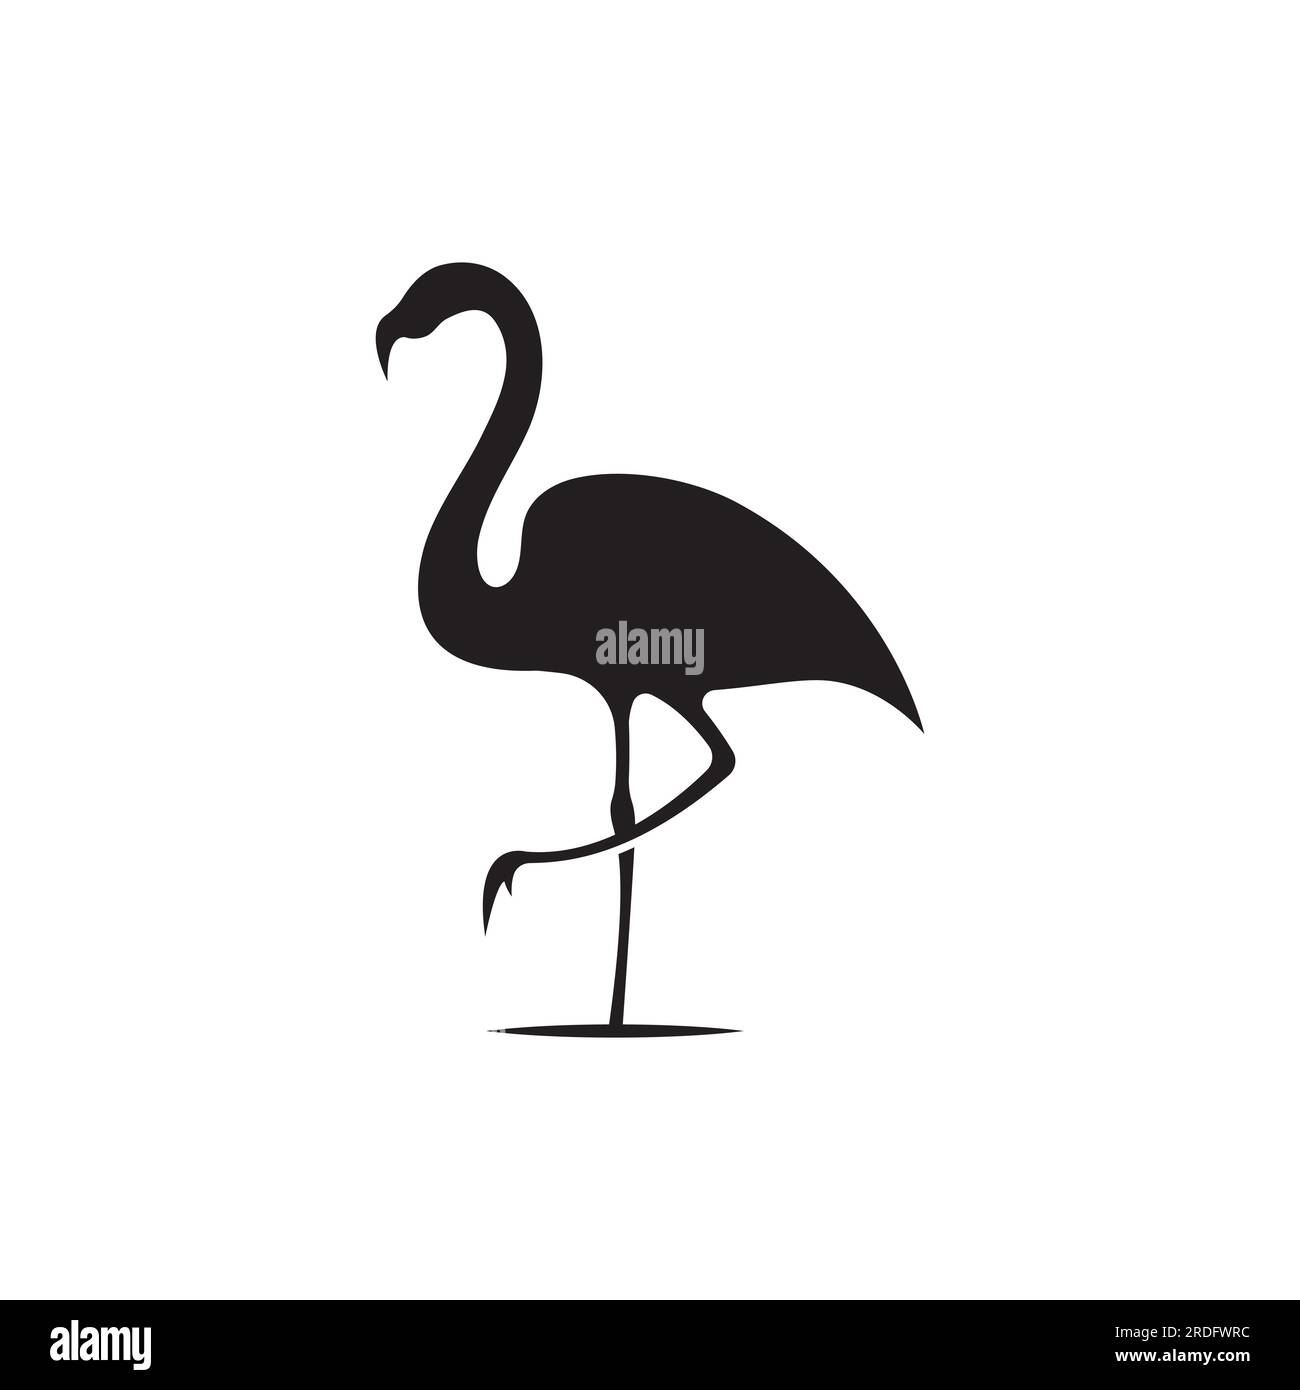 Logo d'un oiseau à longues pattes ou flamant rose. Logo avec des lignes, abstrait et simple. Illustration de Vecteur